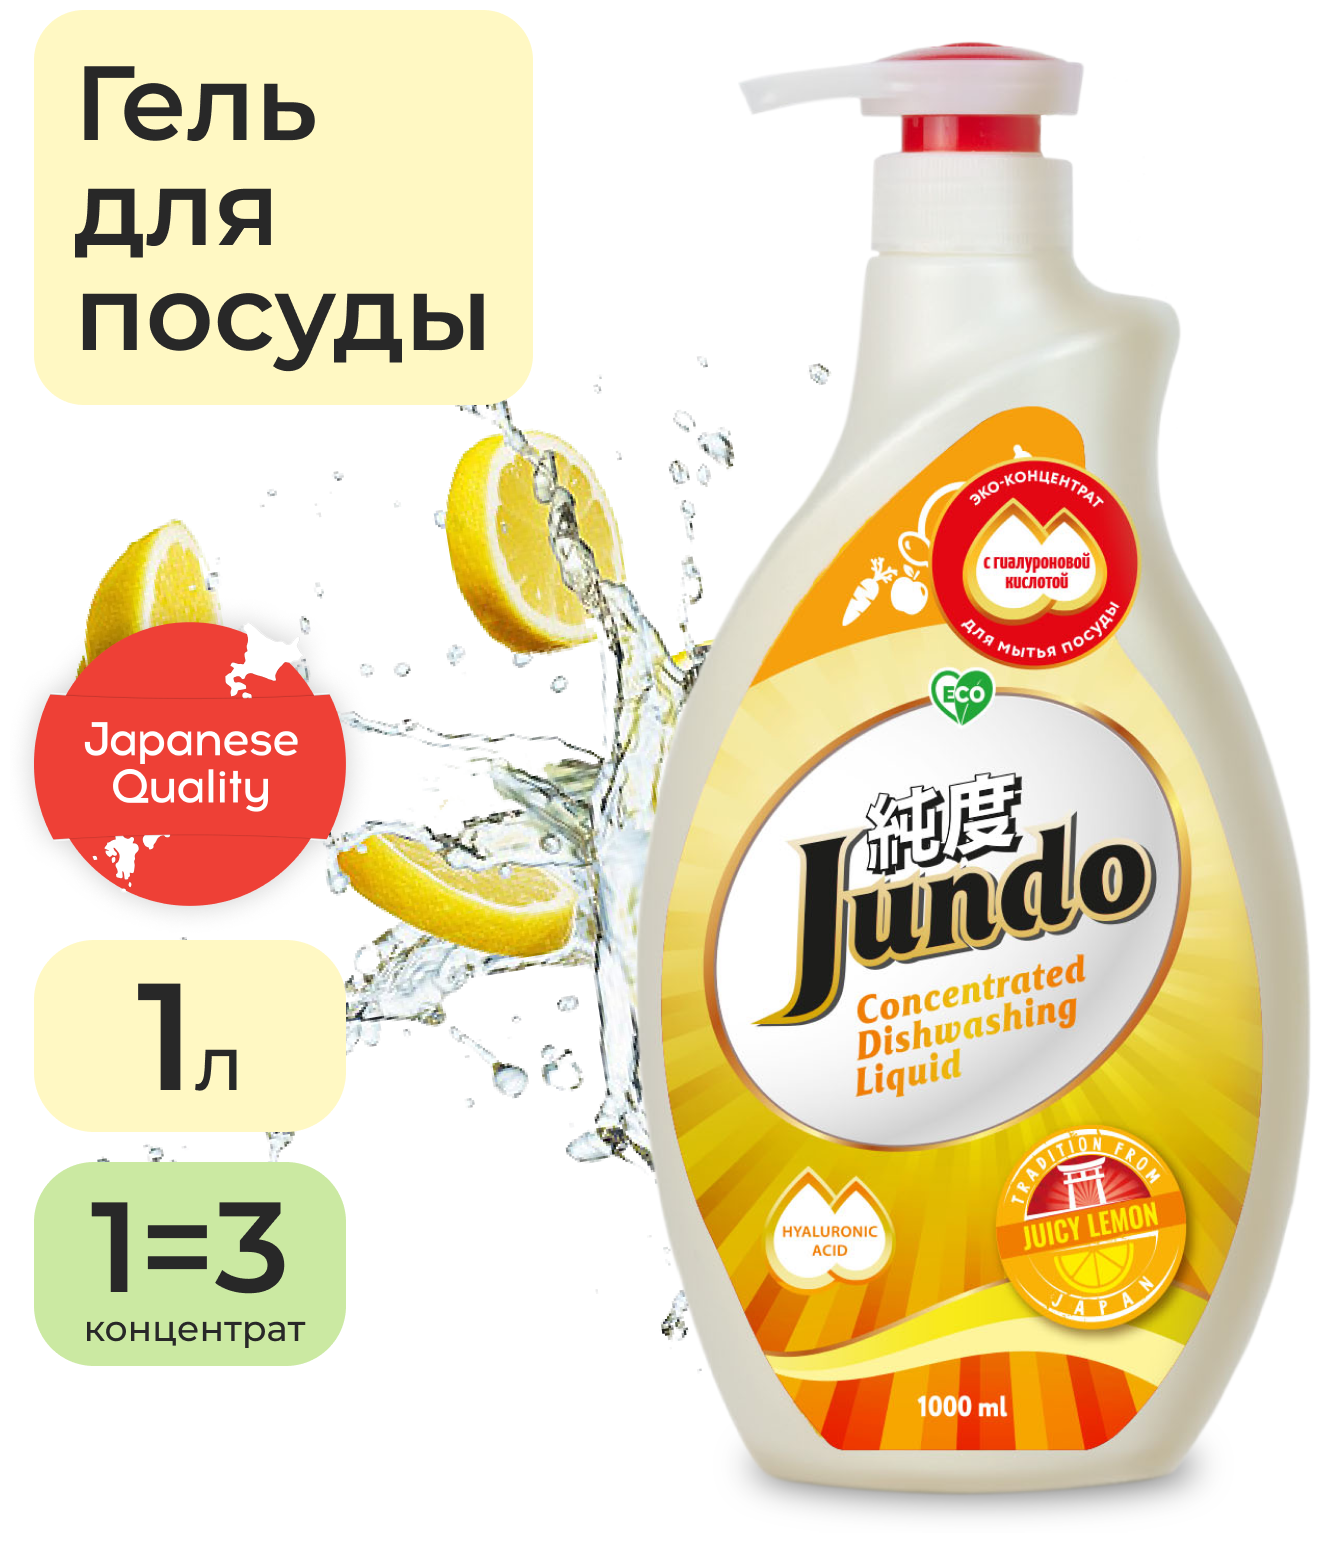 Jundo            Juicy Lemon,1.